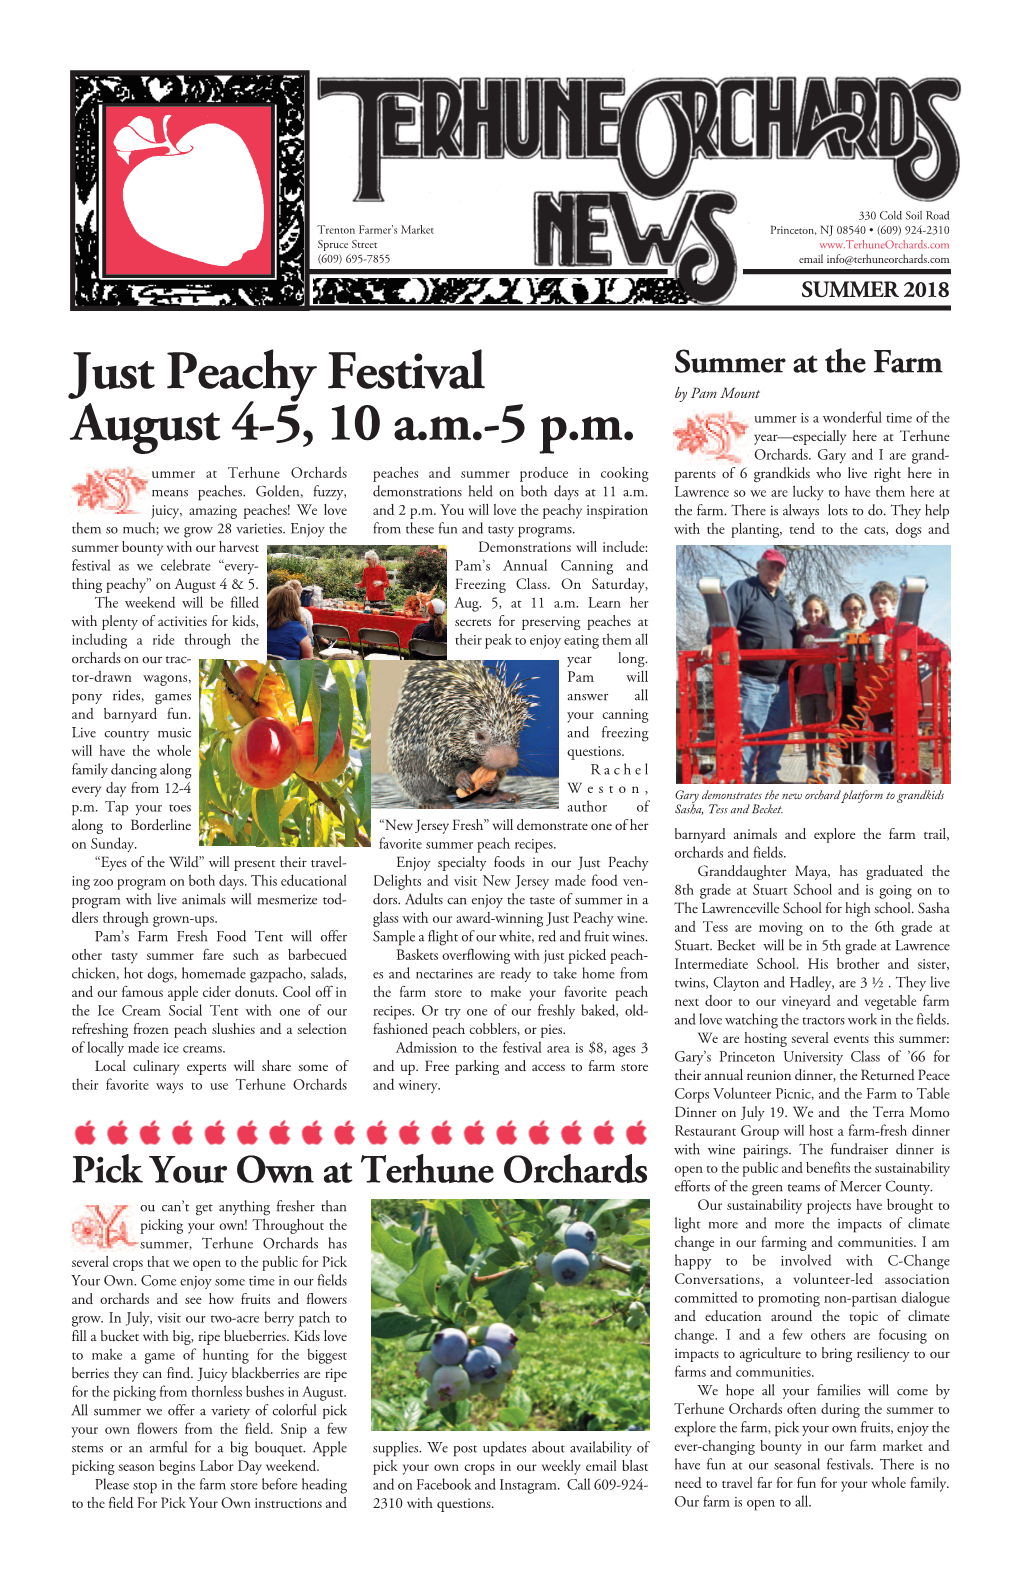 Just Peachy Festival August 4-5, 10 A.M.-5 P.M